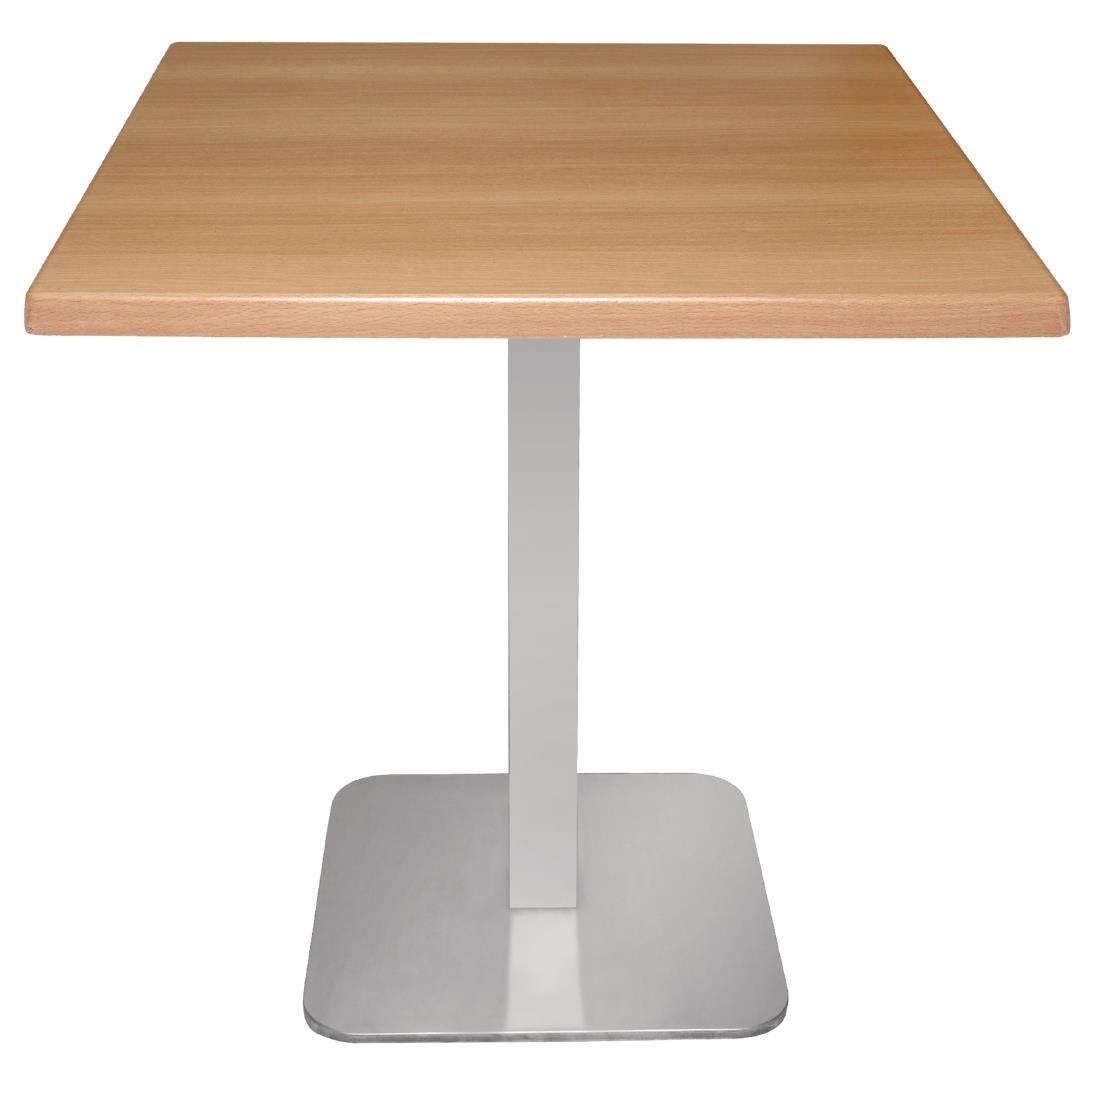 Bolero Square Stainless Steel Table Base - GK993  - 3